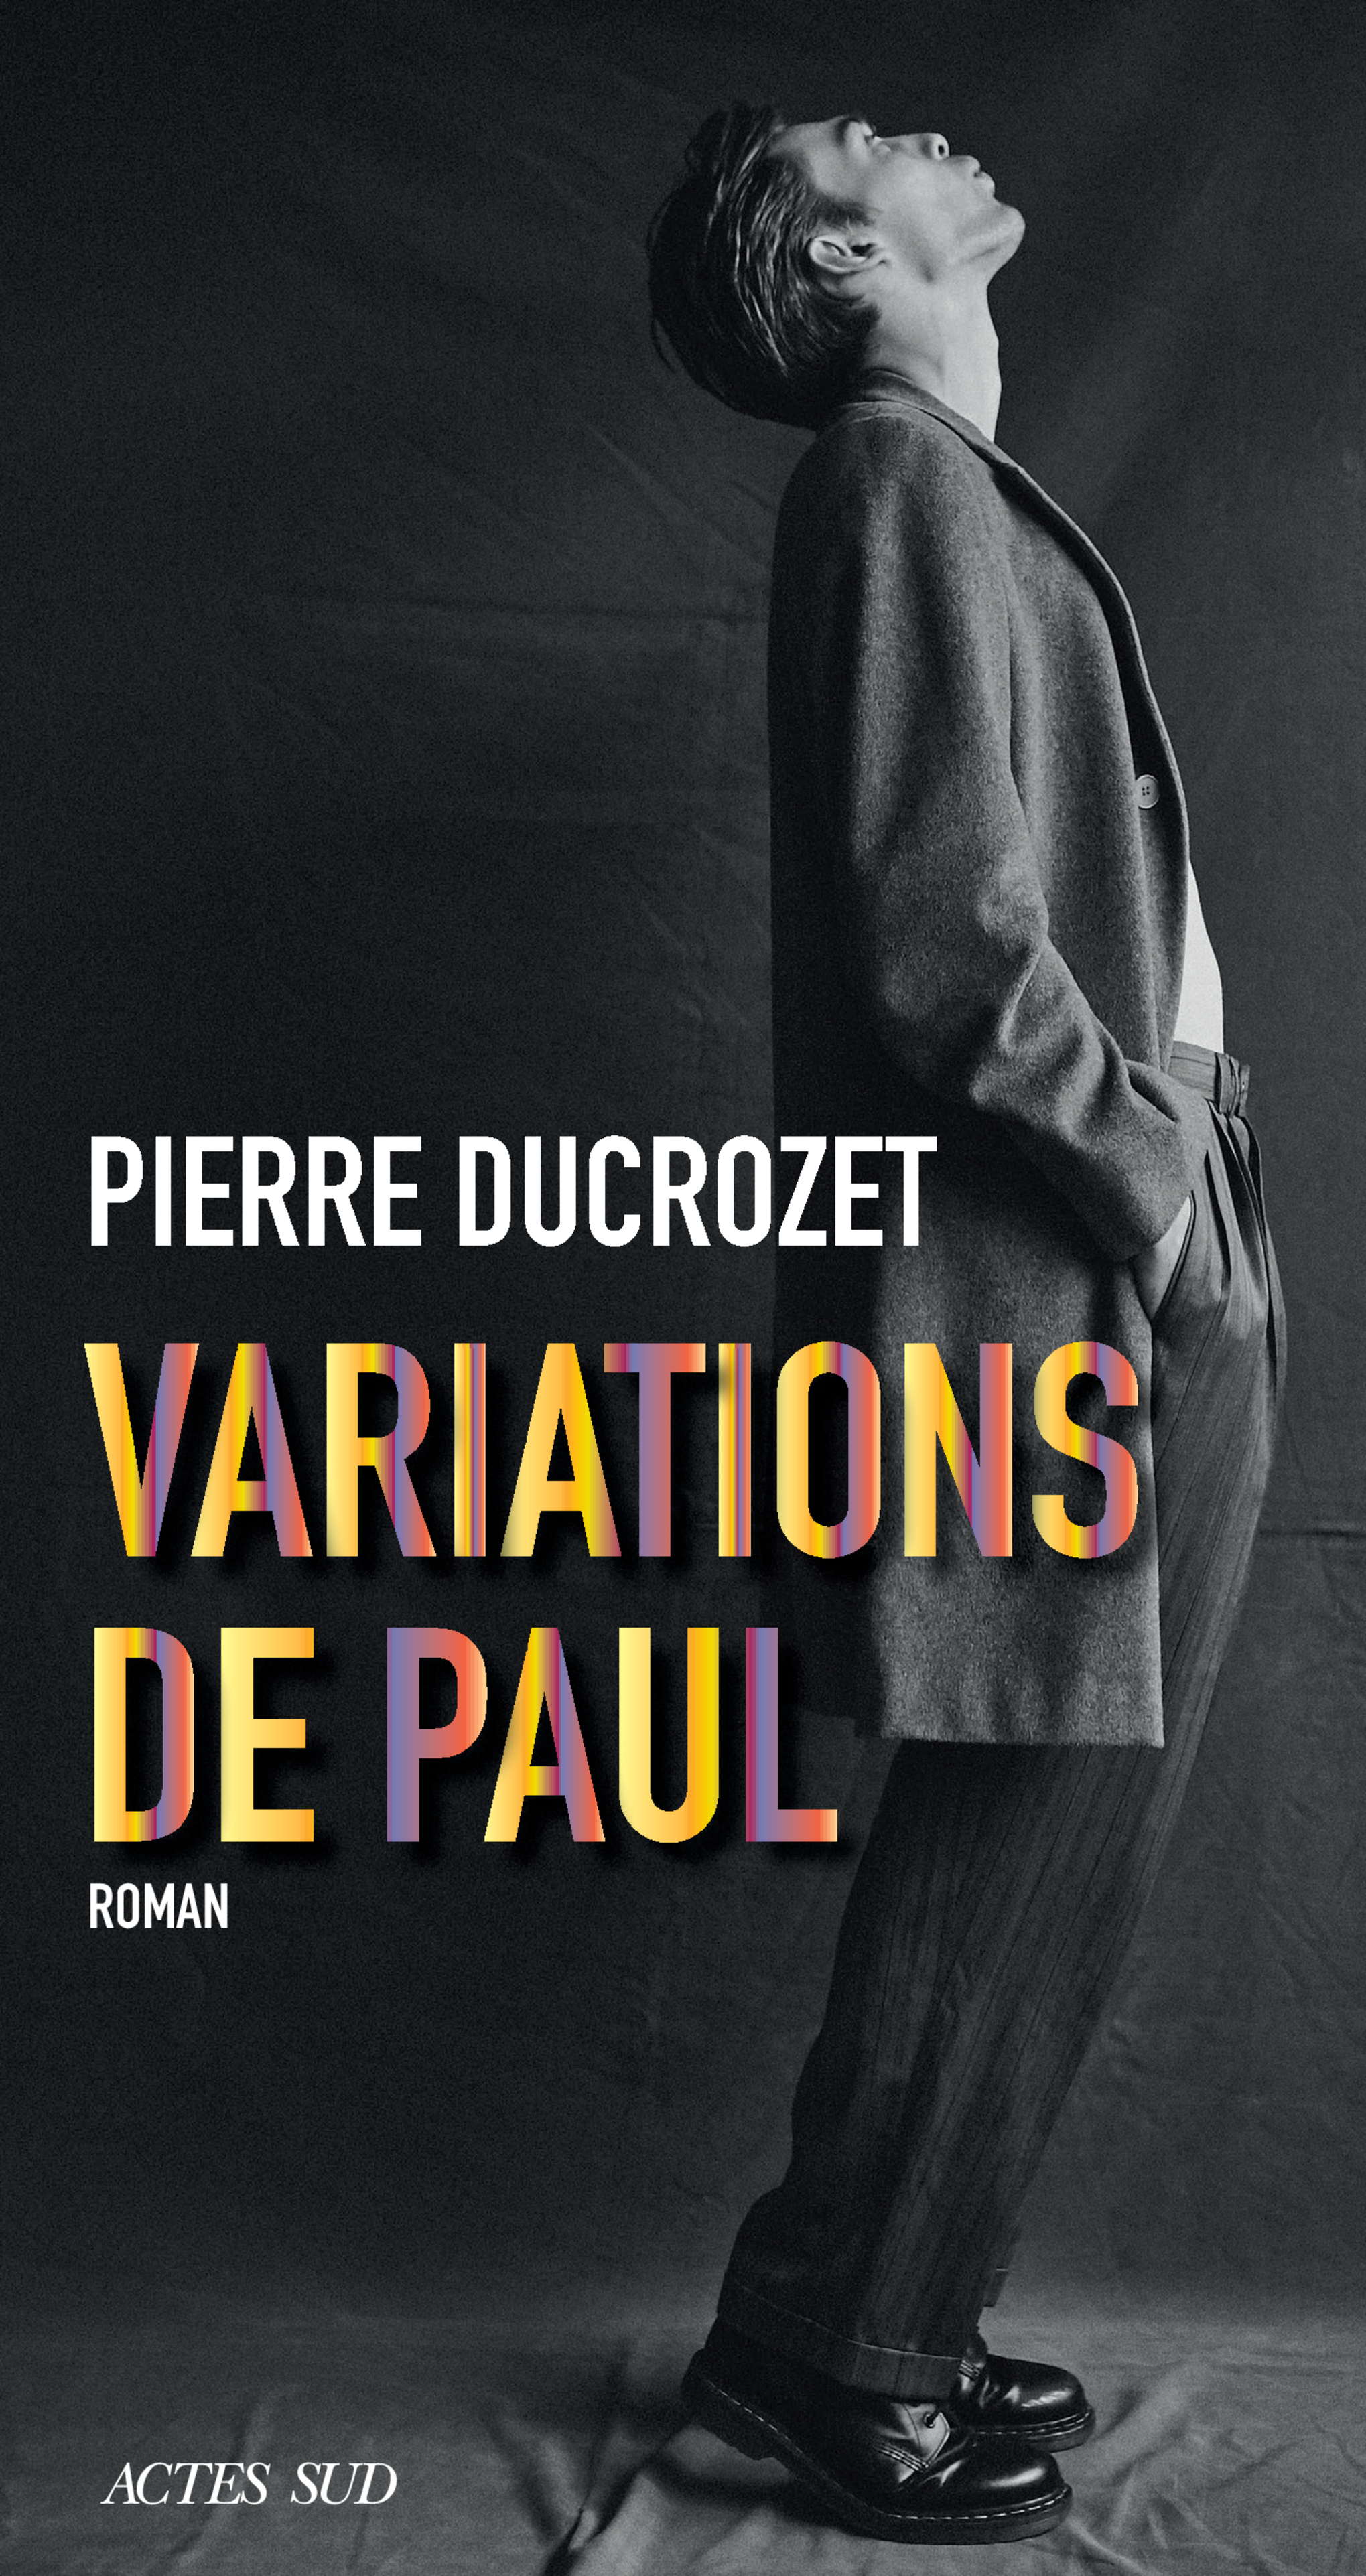 Afficher "Variations de Paul"